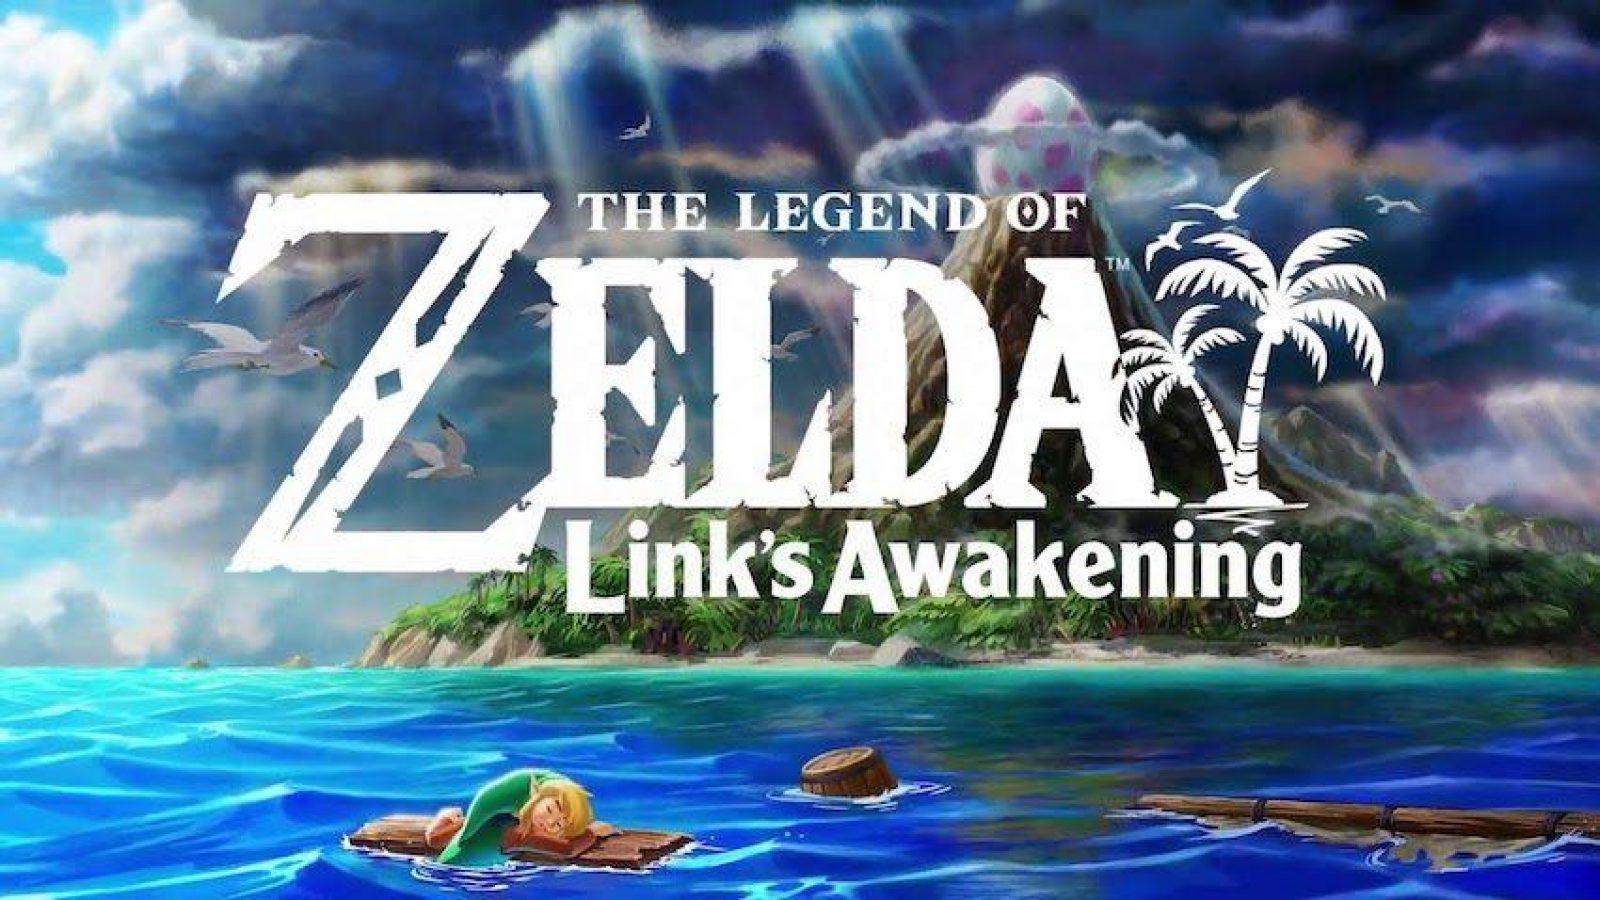 Zelda: Link's Awakening Nintendo Switch remake confirmed